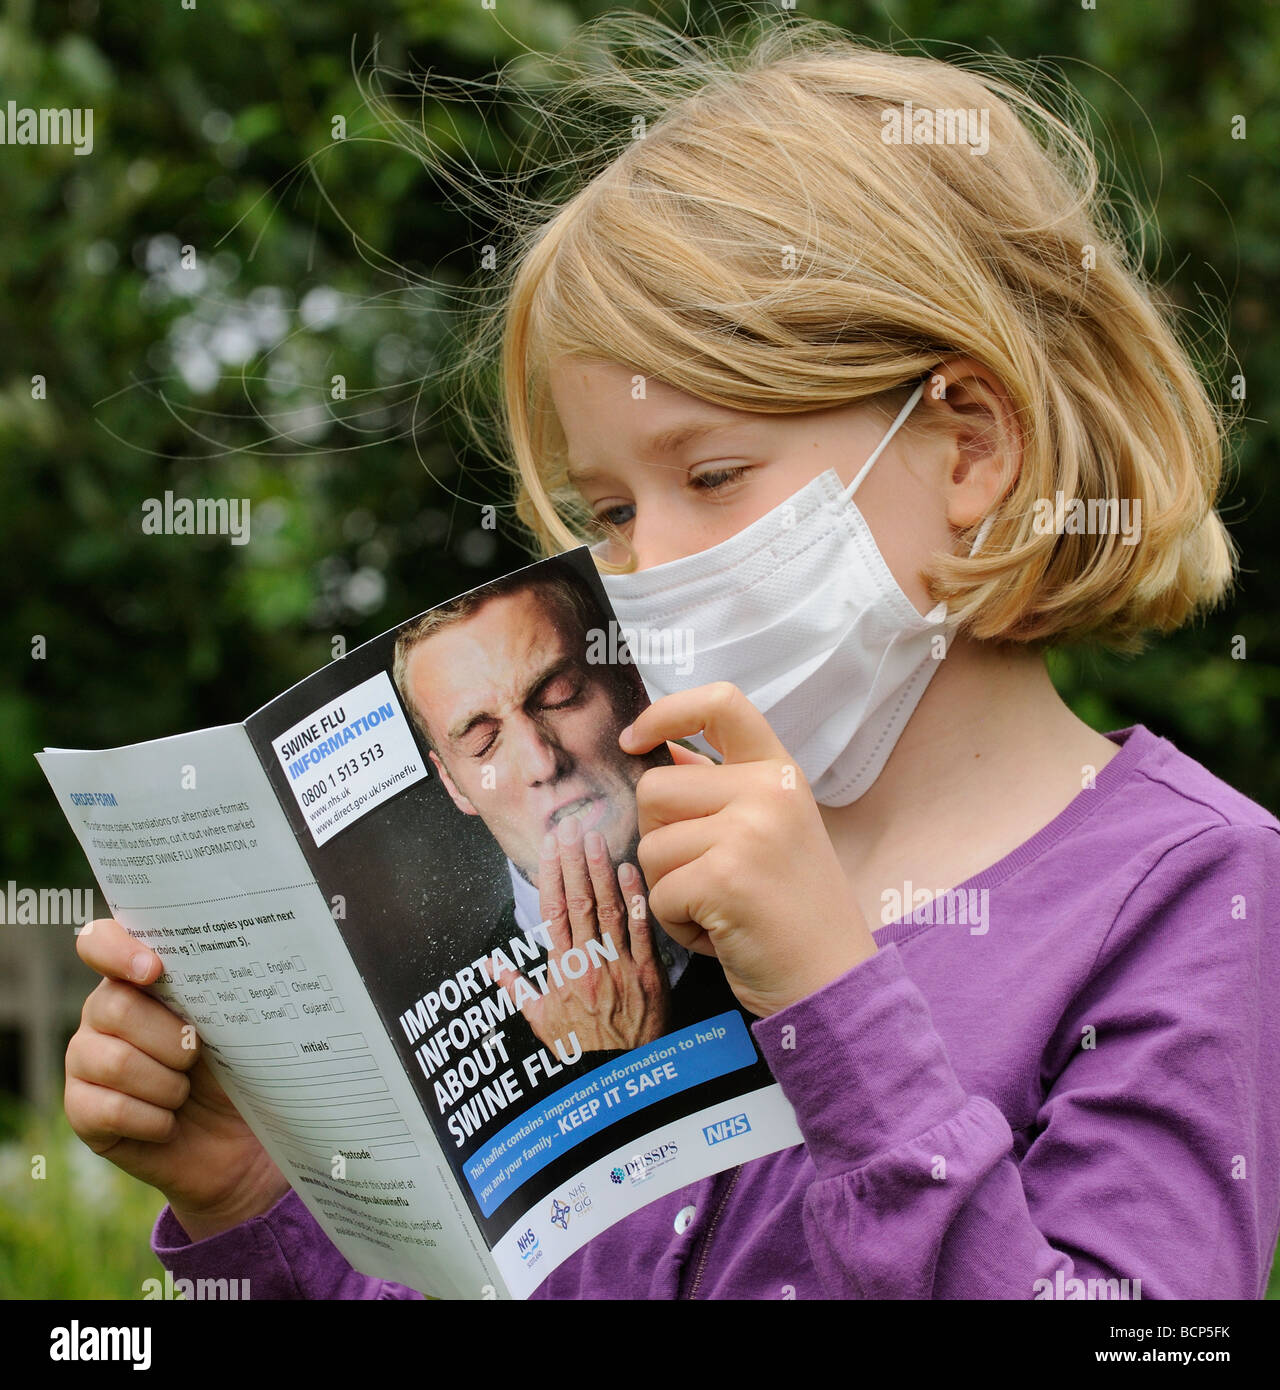 Schweinegrippe-Informationsblatt gelesen wird von einem kleinen Mädchen mit einer medizinischen Maske Stockfoto